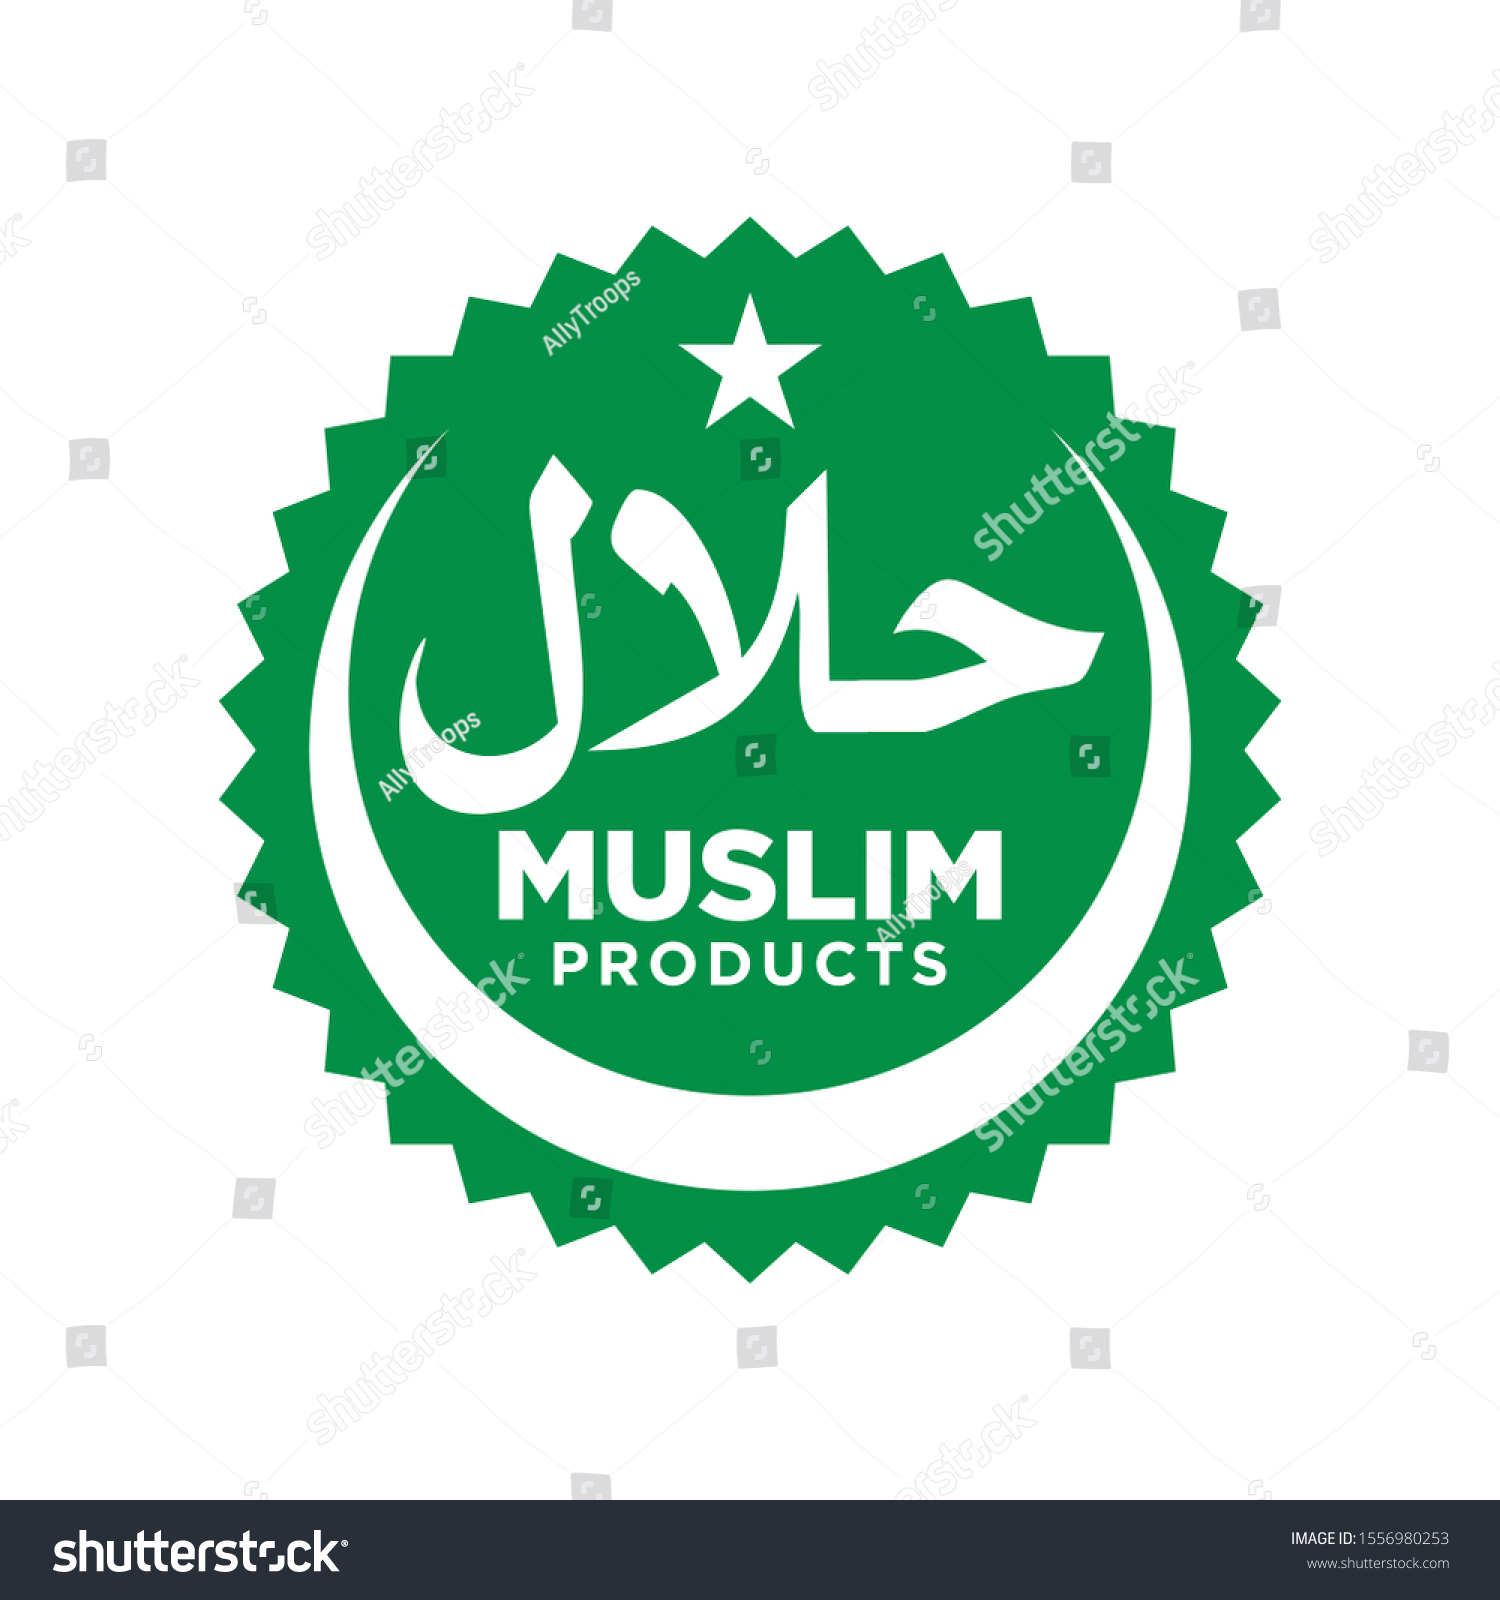 produk muslim logo vector - Connor Peters